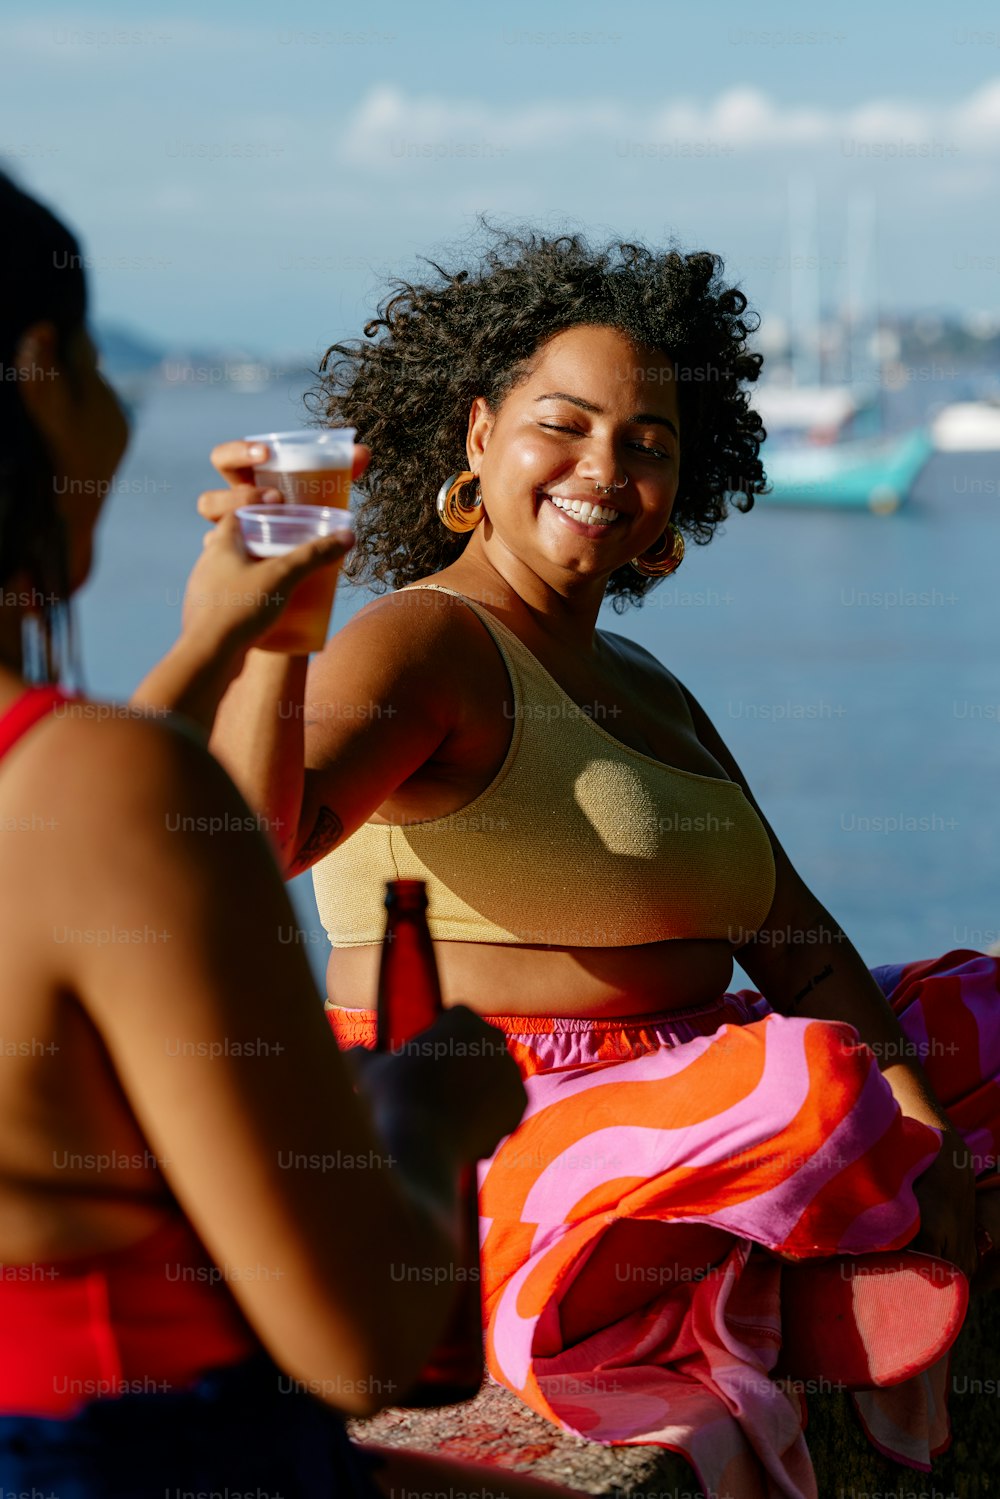 Eine Frau sitzt auf einer Bank und hält ein Glas Wein in der Hand